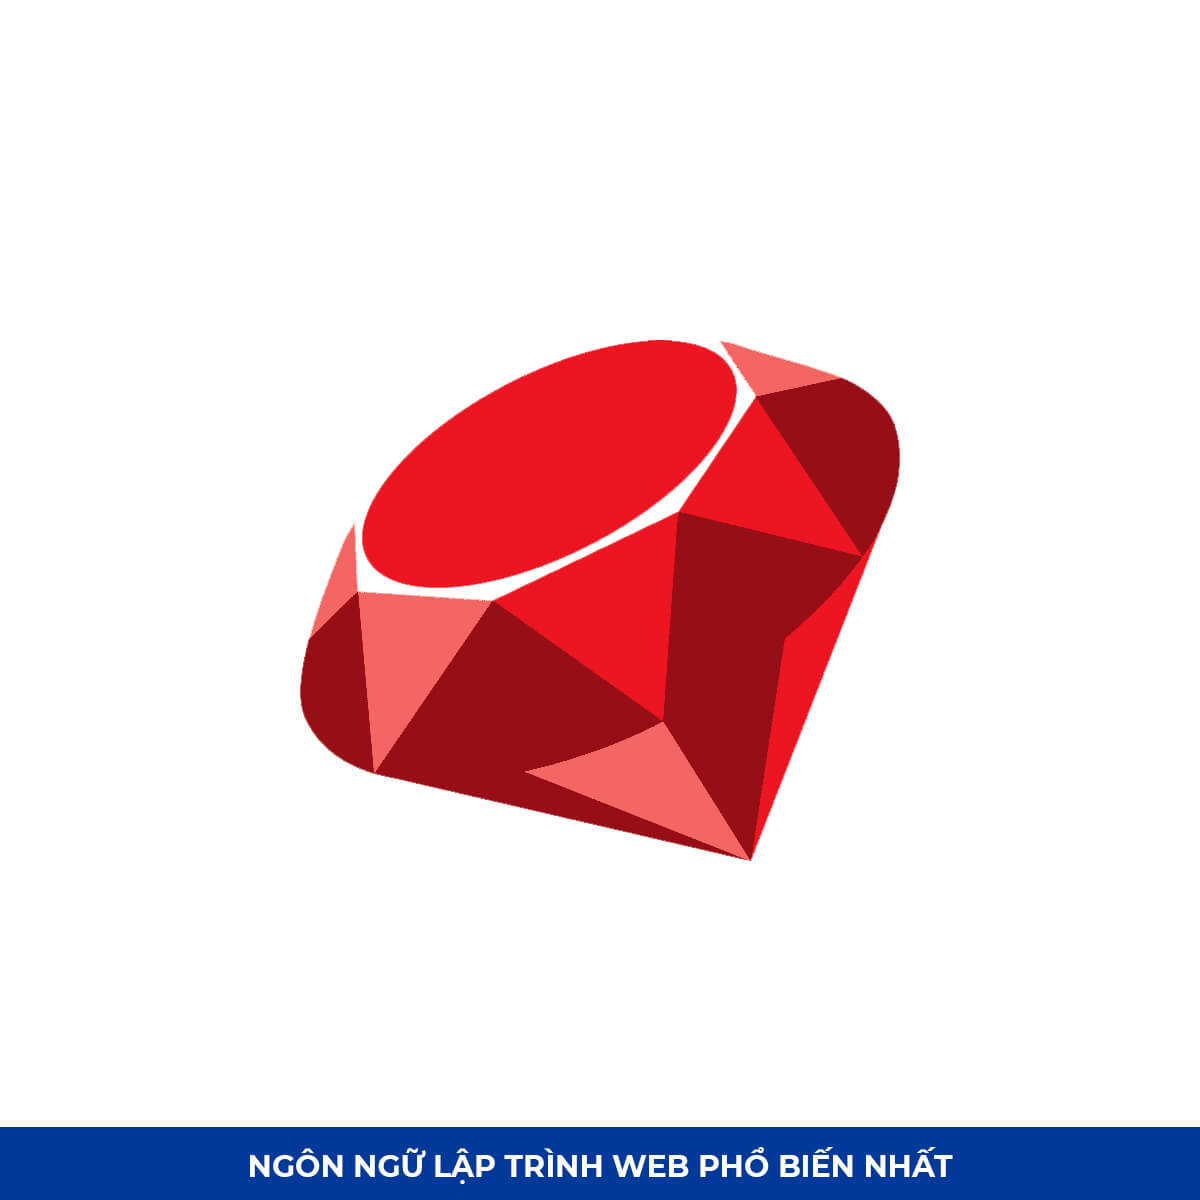 Top Ngôn ngữ lập trình web #6: Ruby